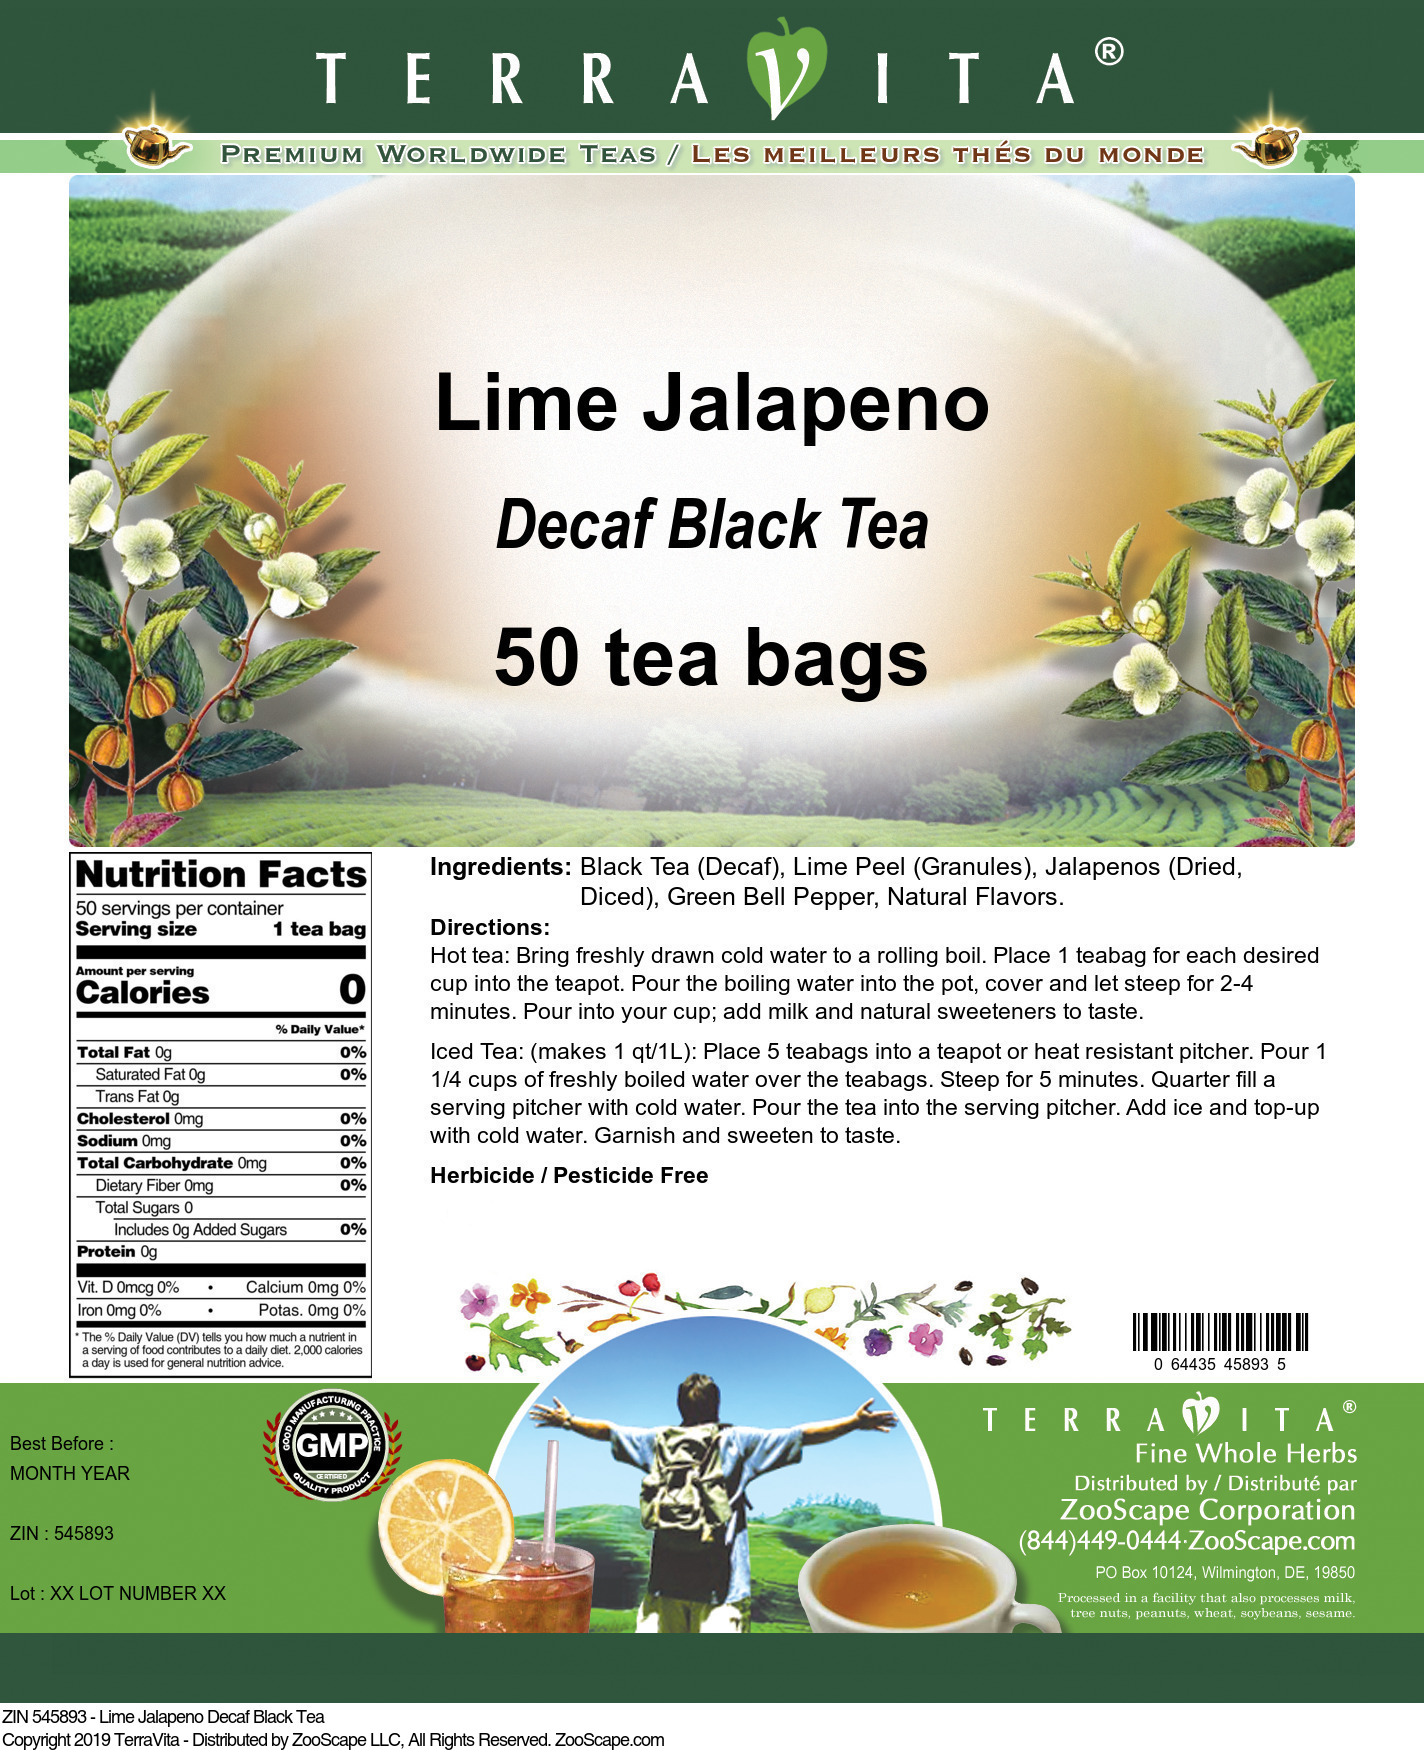 Lime Jalapeno Decaf Black Tea - Label